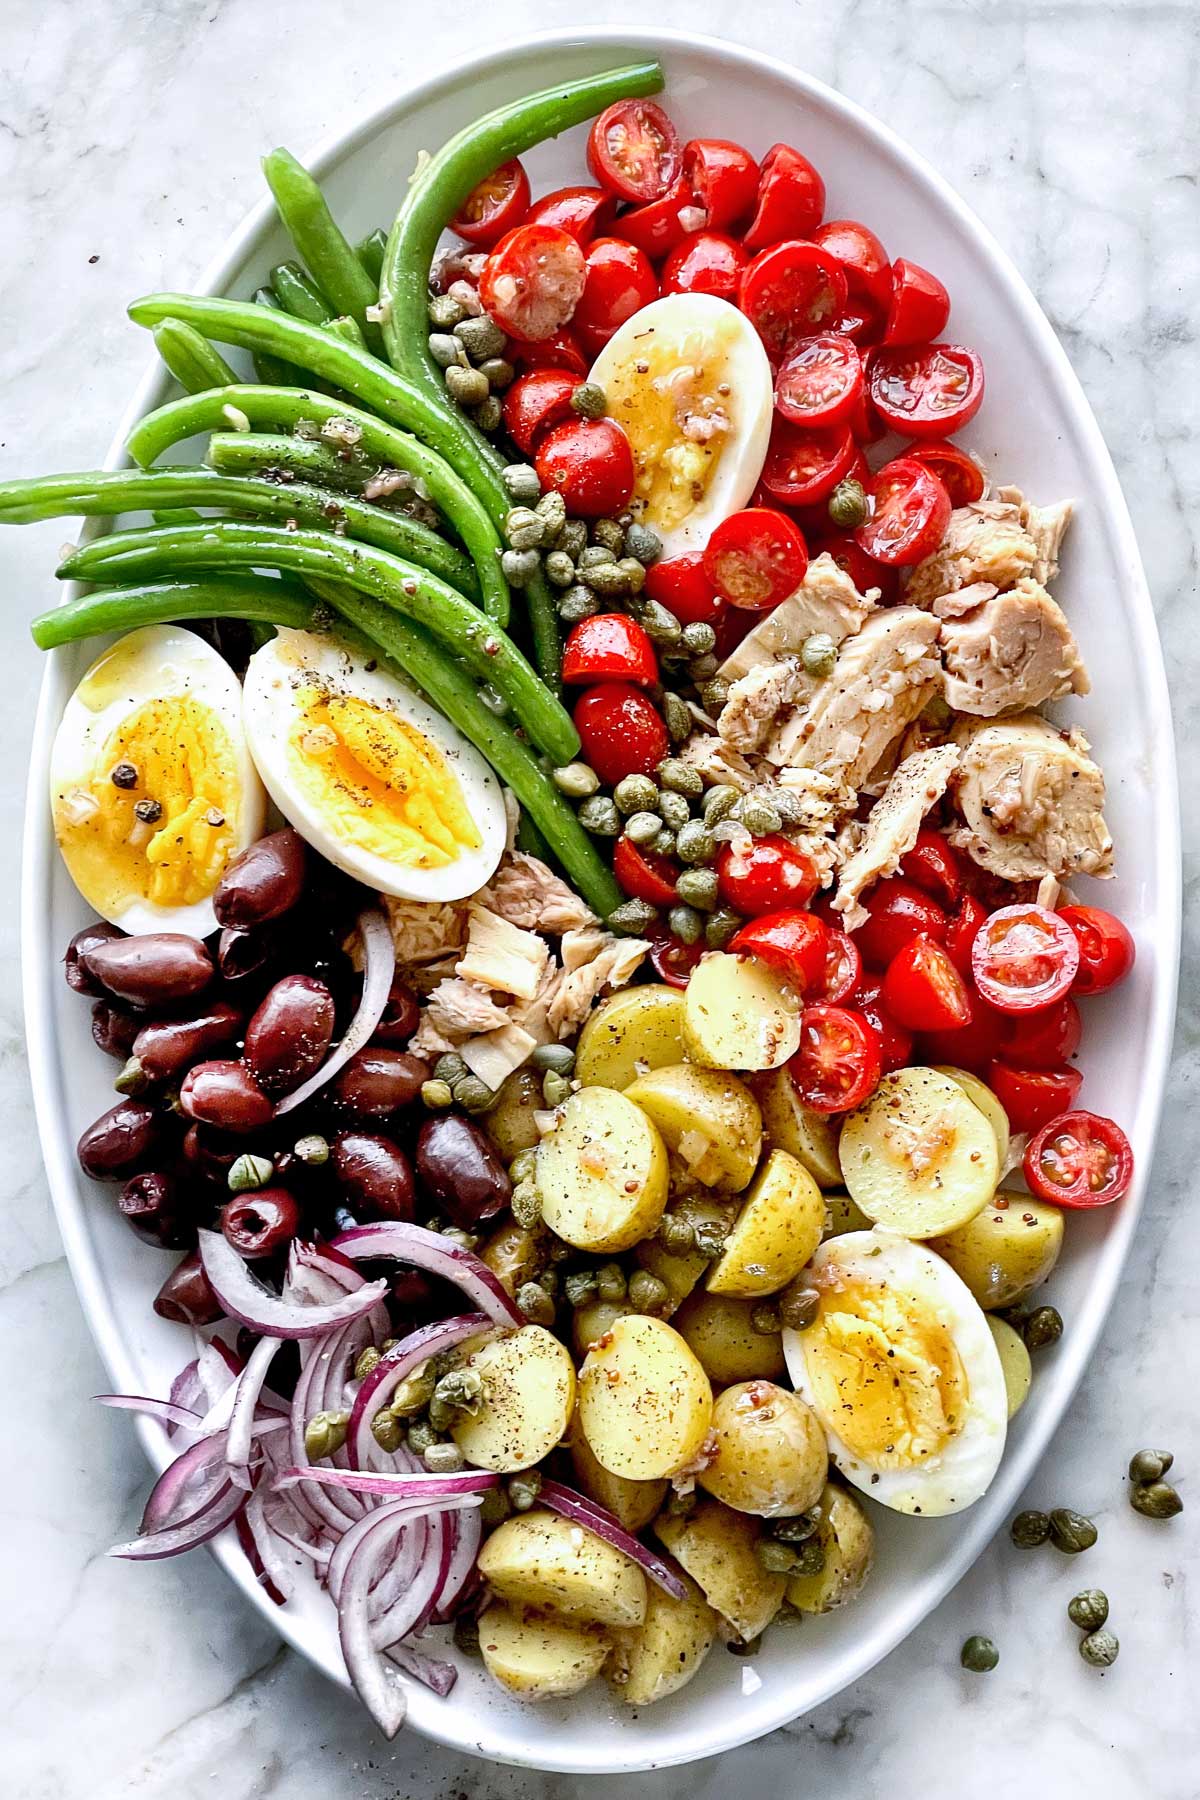 Top 3 Nicoise Salad Recipes